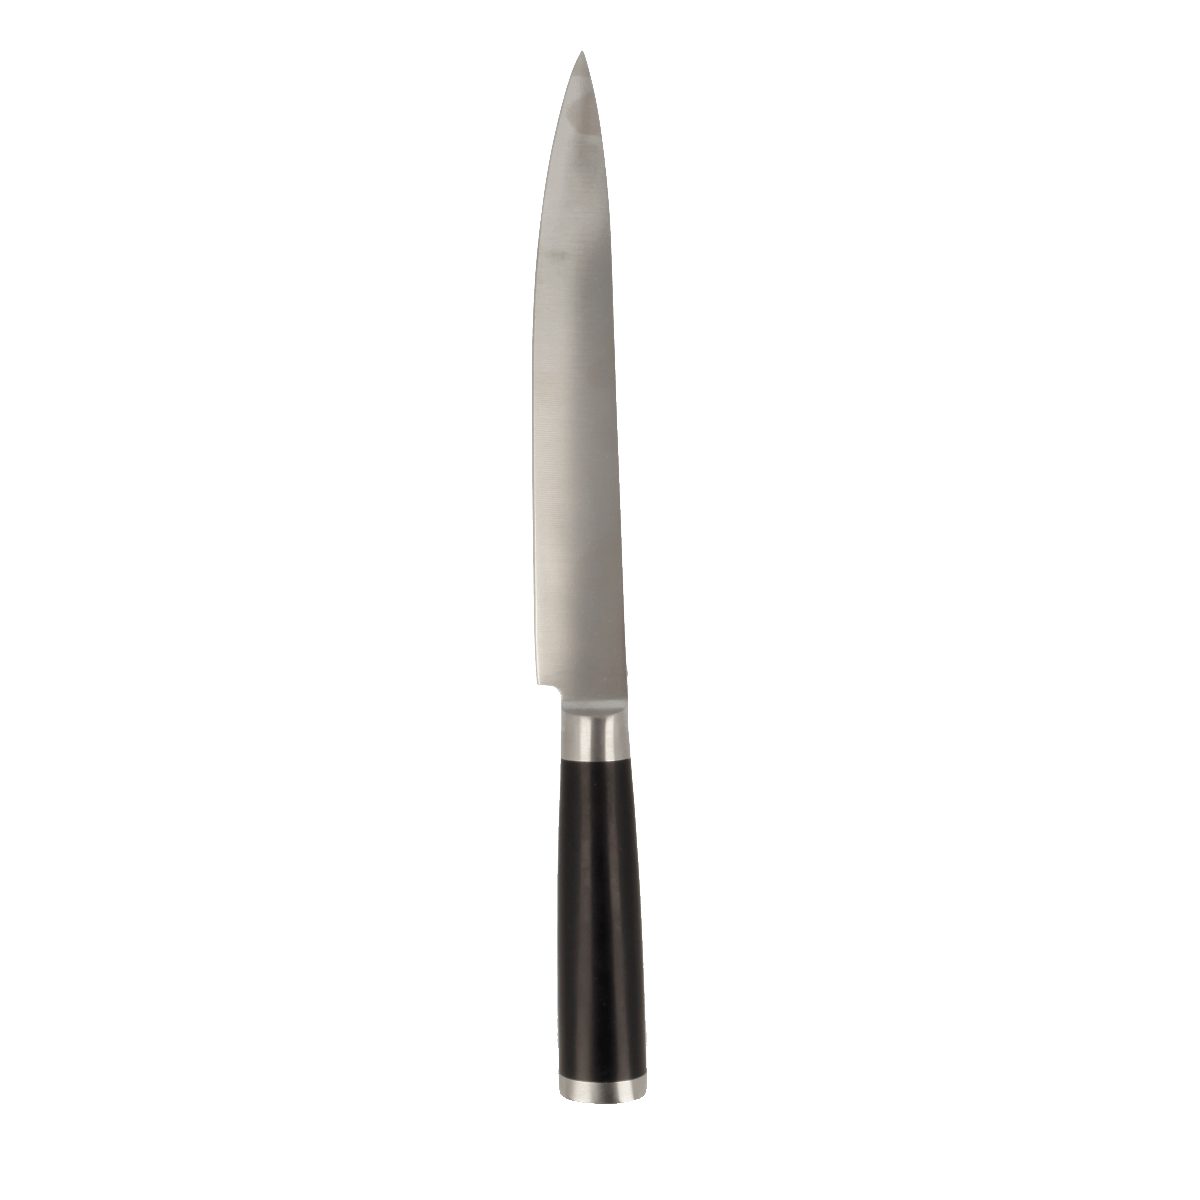 EUROHOME Universalmesser Edelstahl Schneidemesser scharf mit rutschfestem Kunststoffgriff, (Messer 33 cm lang), Universalmesser Küche - Gemüsemesser scharf